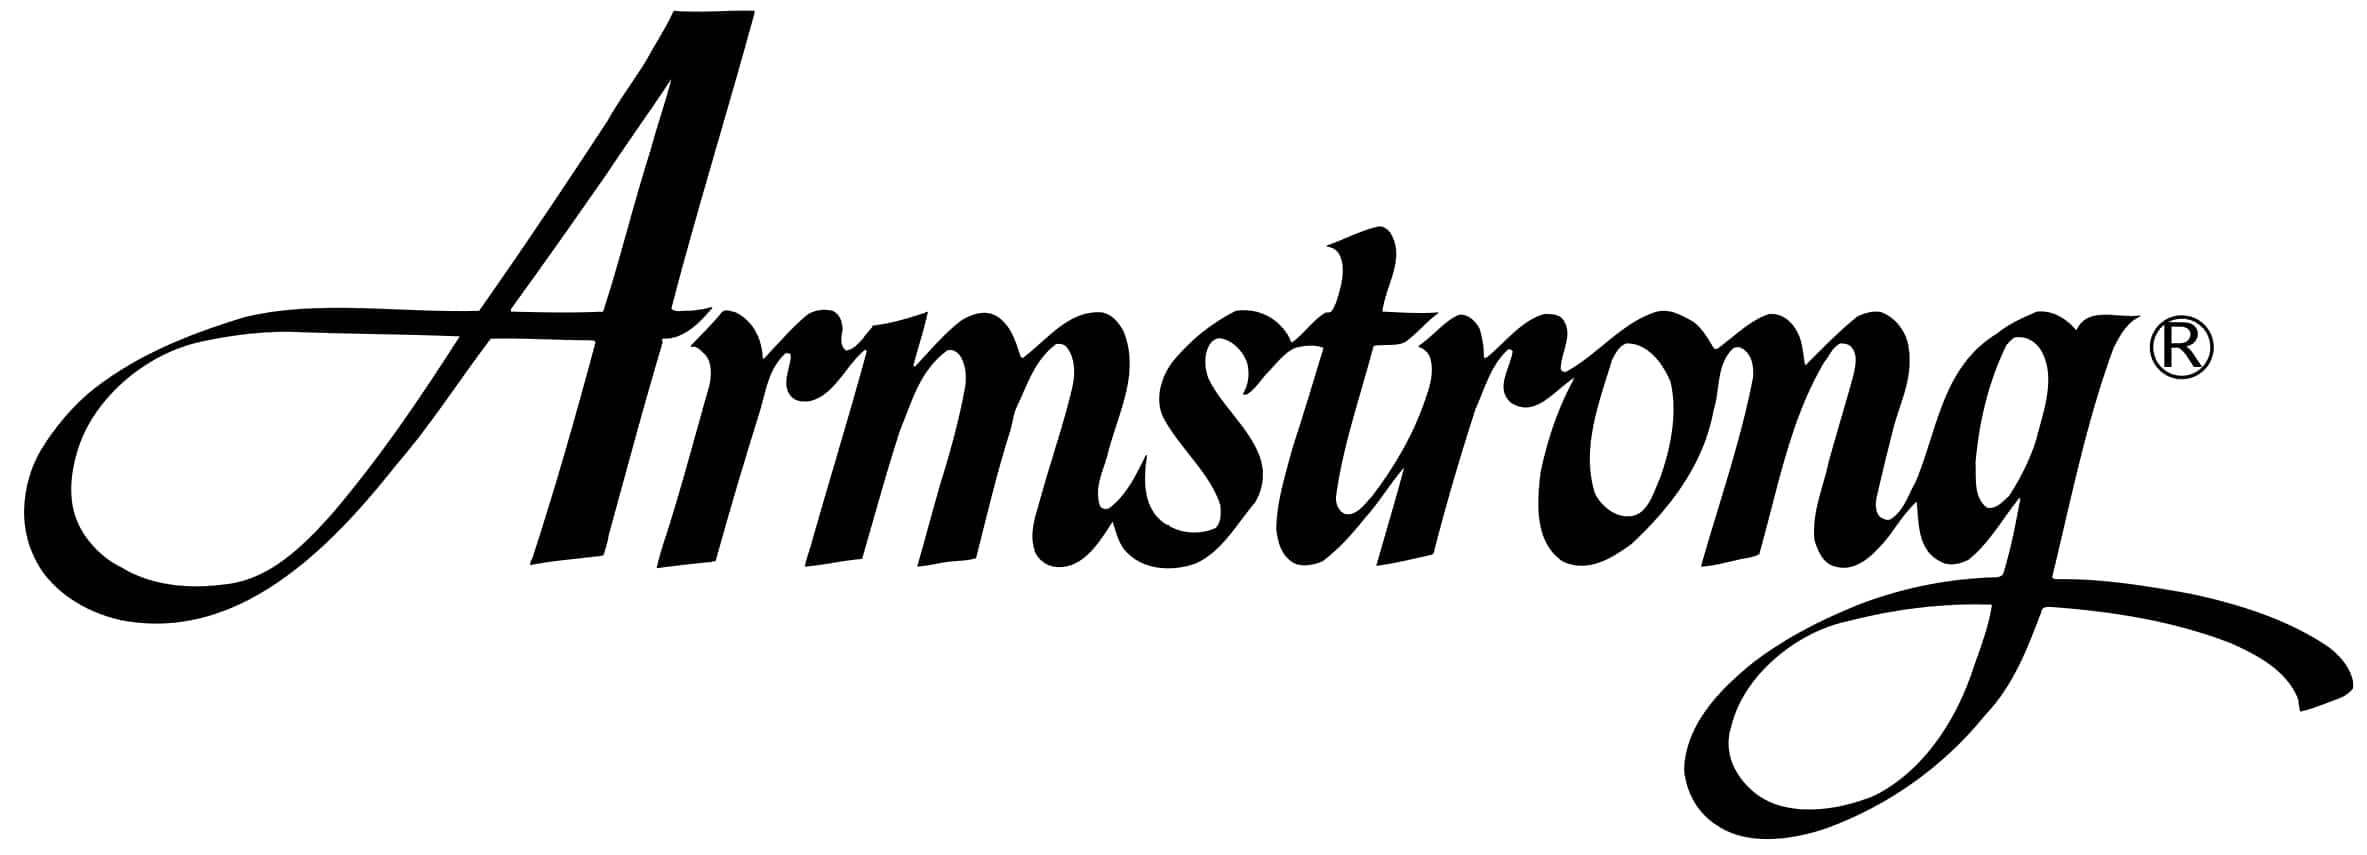 Armstrong Logo - Armstrong – Zenith Music